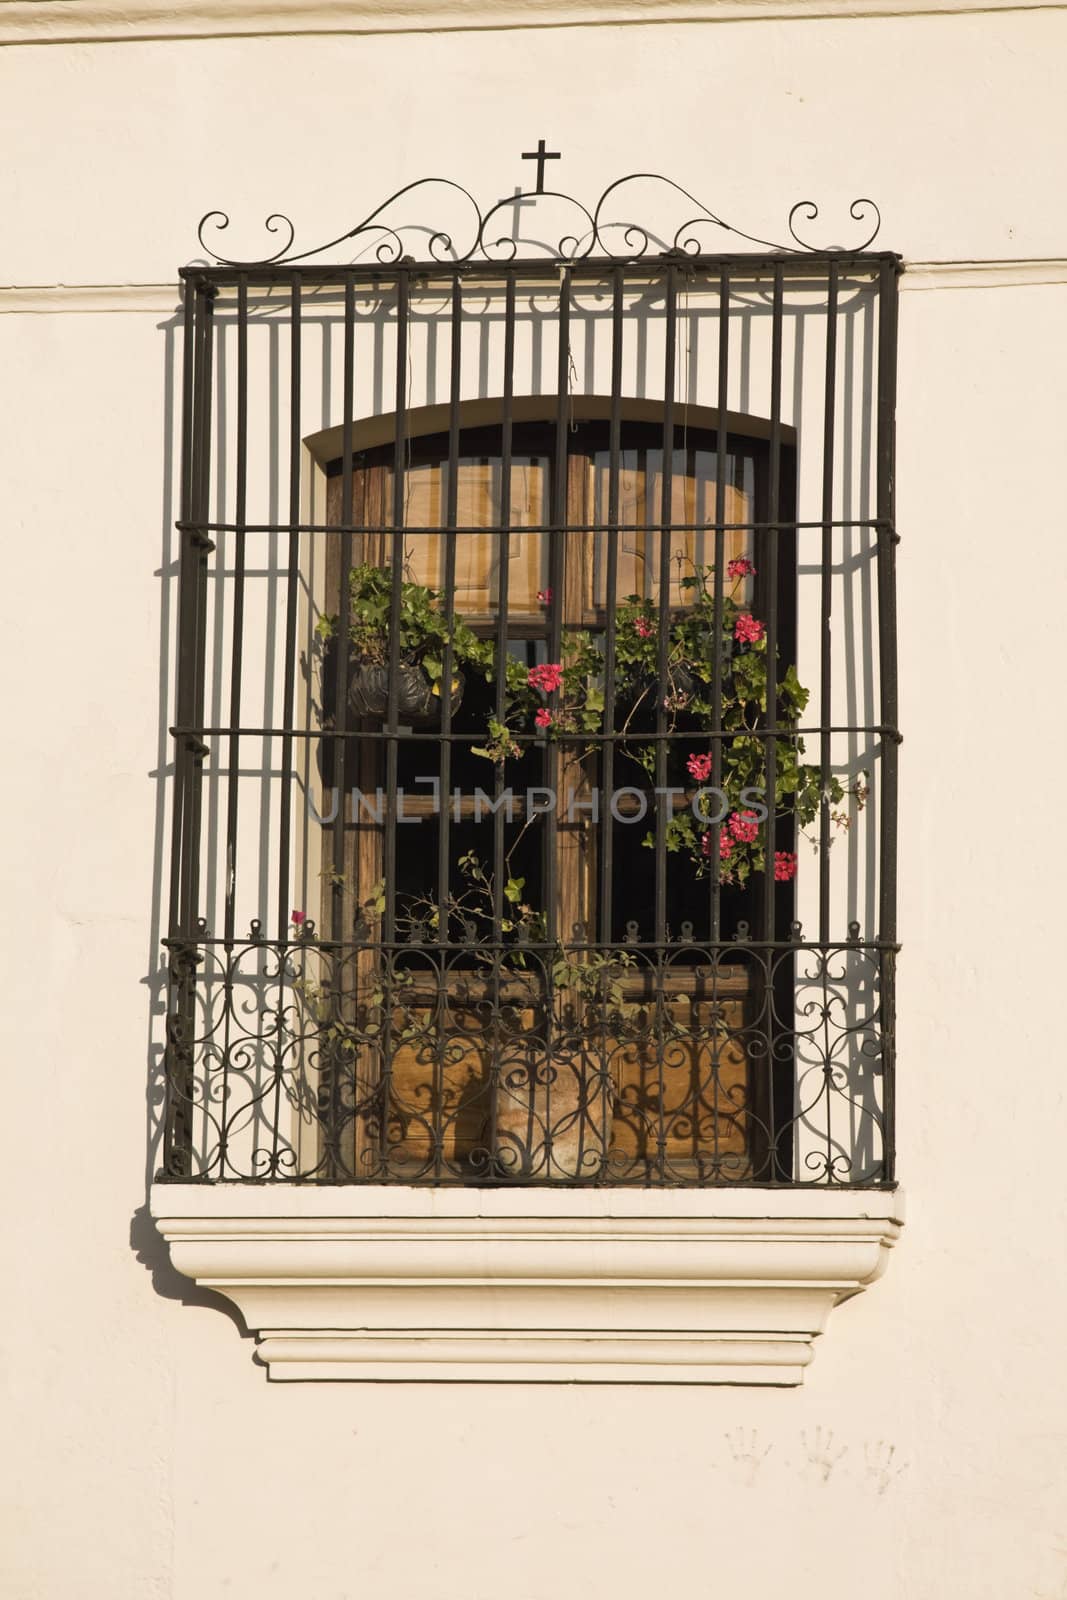 Window in Antigua by benkrut